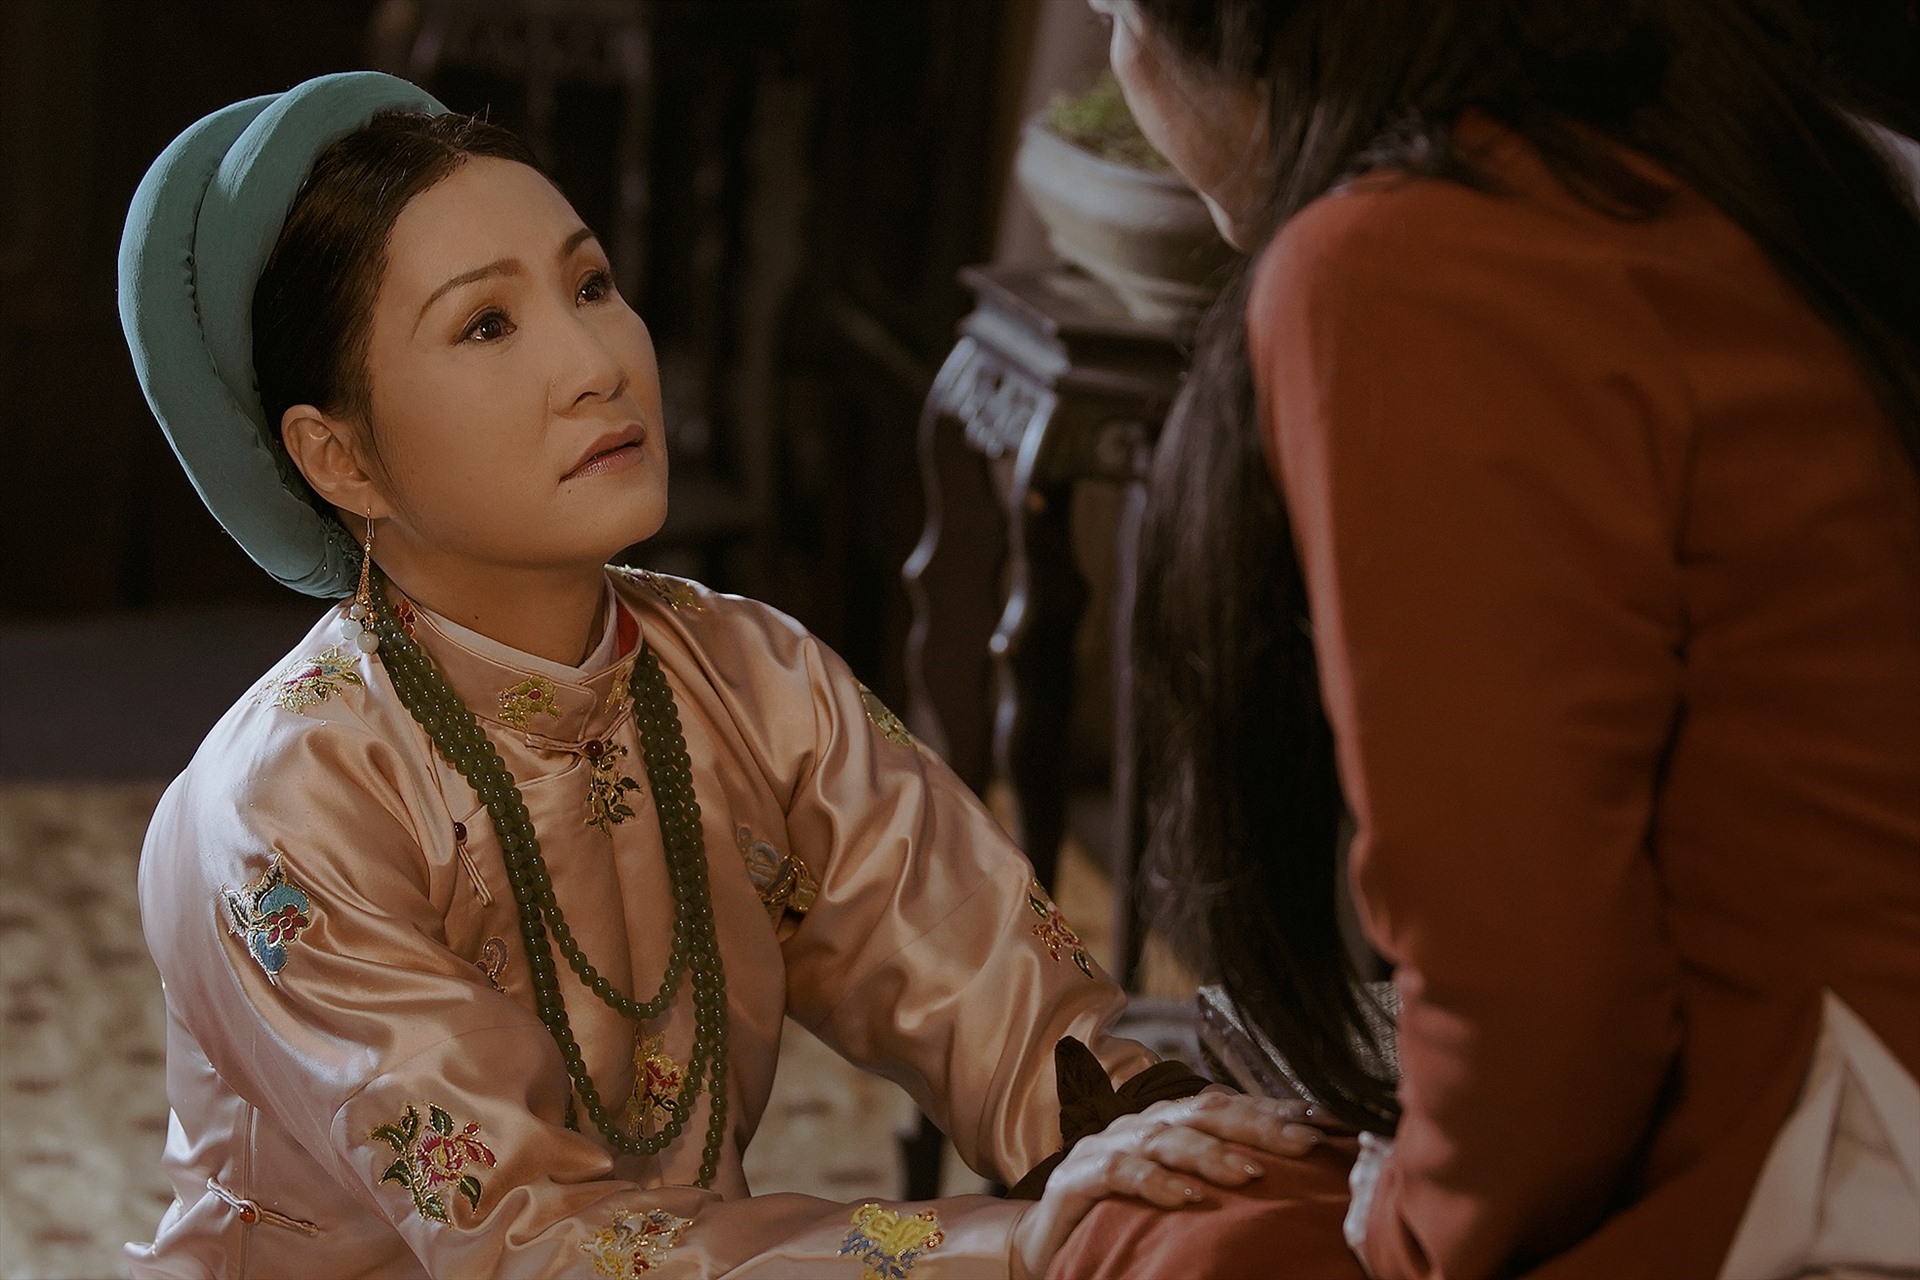 Nghệ sĩ Hồng Đào thủ vai từ Dụ Thái hậu trong phim “Phượng Khấu” của đạo diễn Huỳnh Tuấn Anh. Ảnh: Nhân vật cung cấp